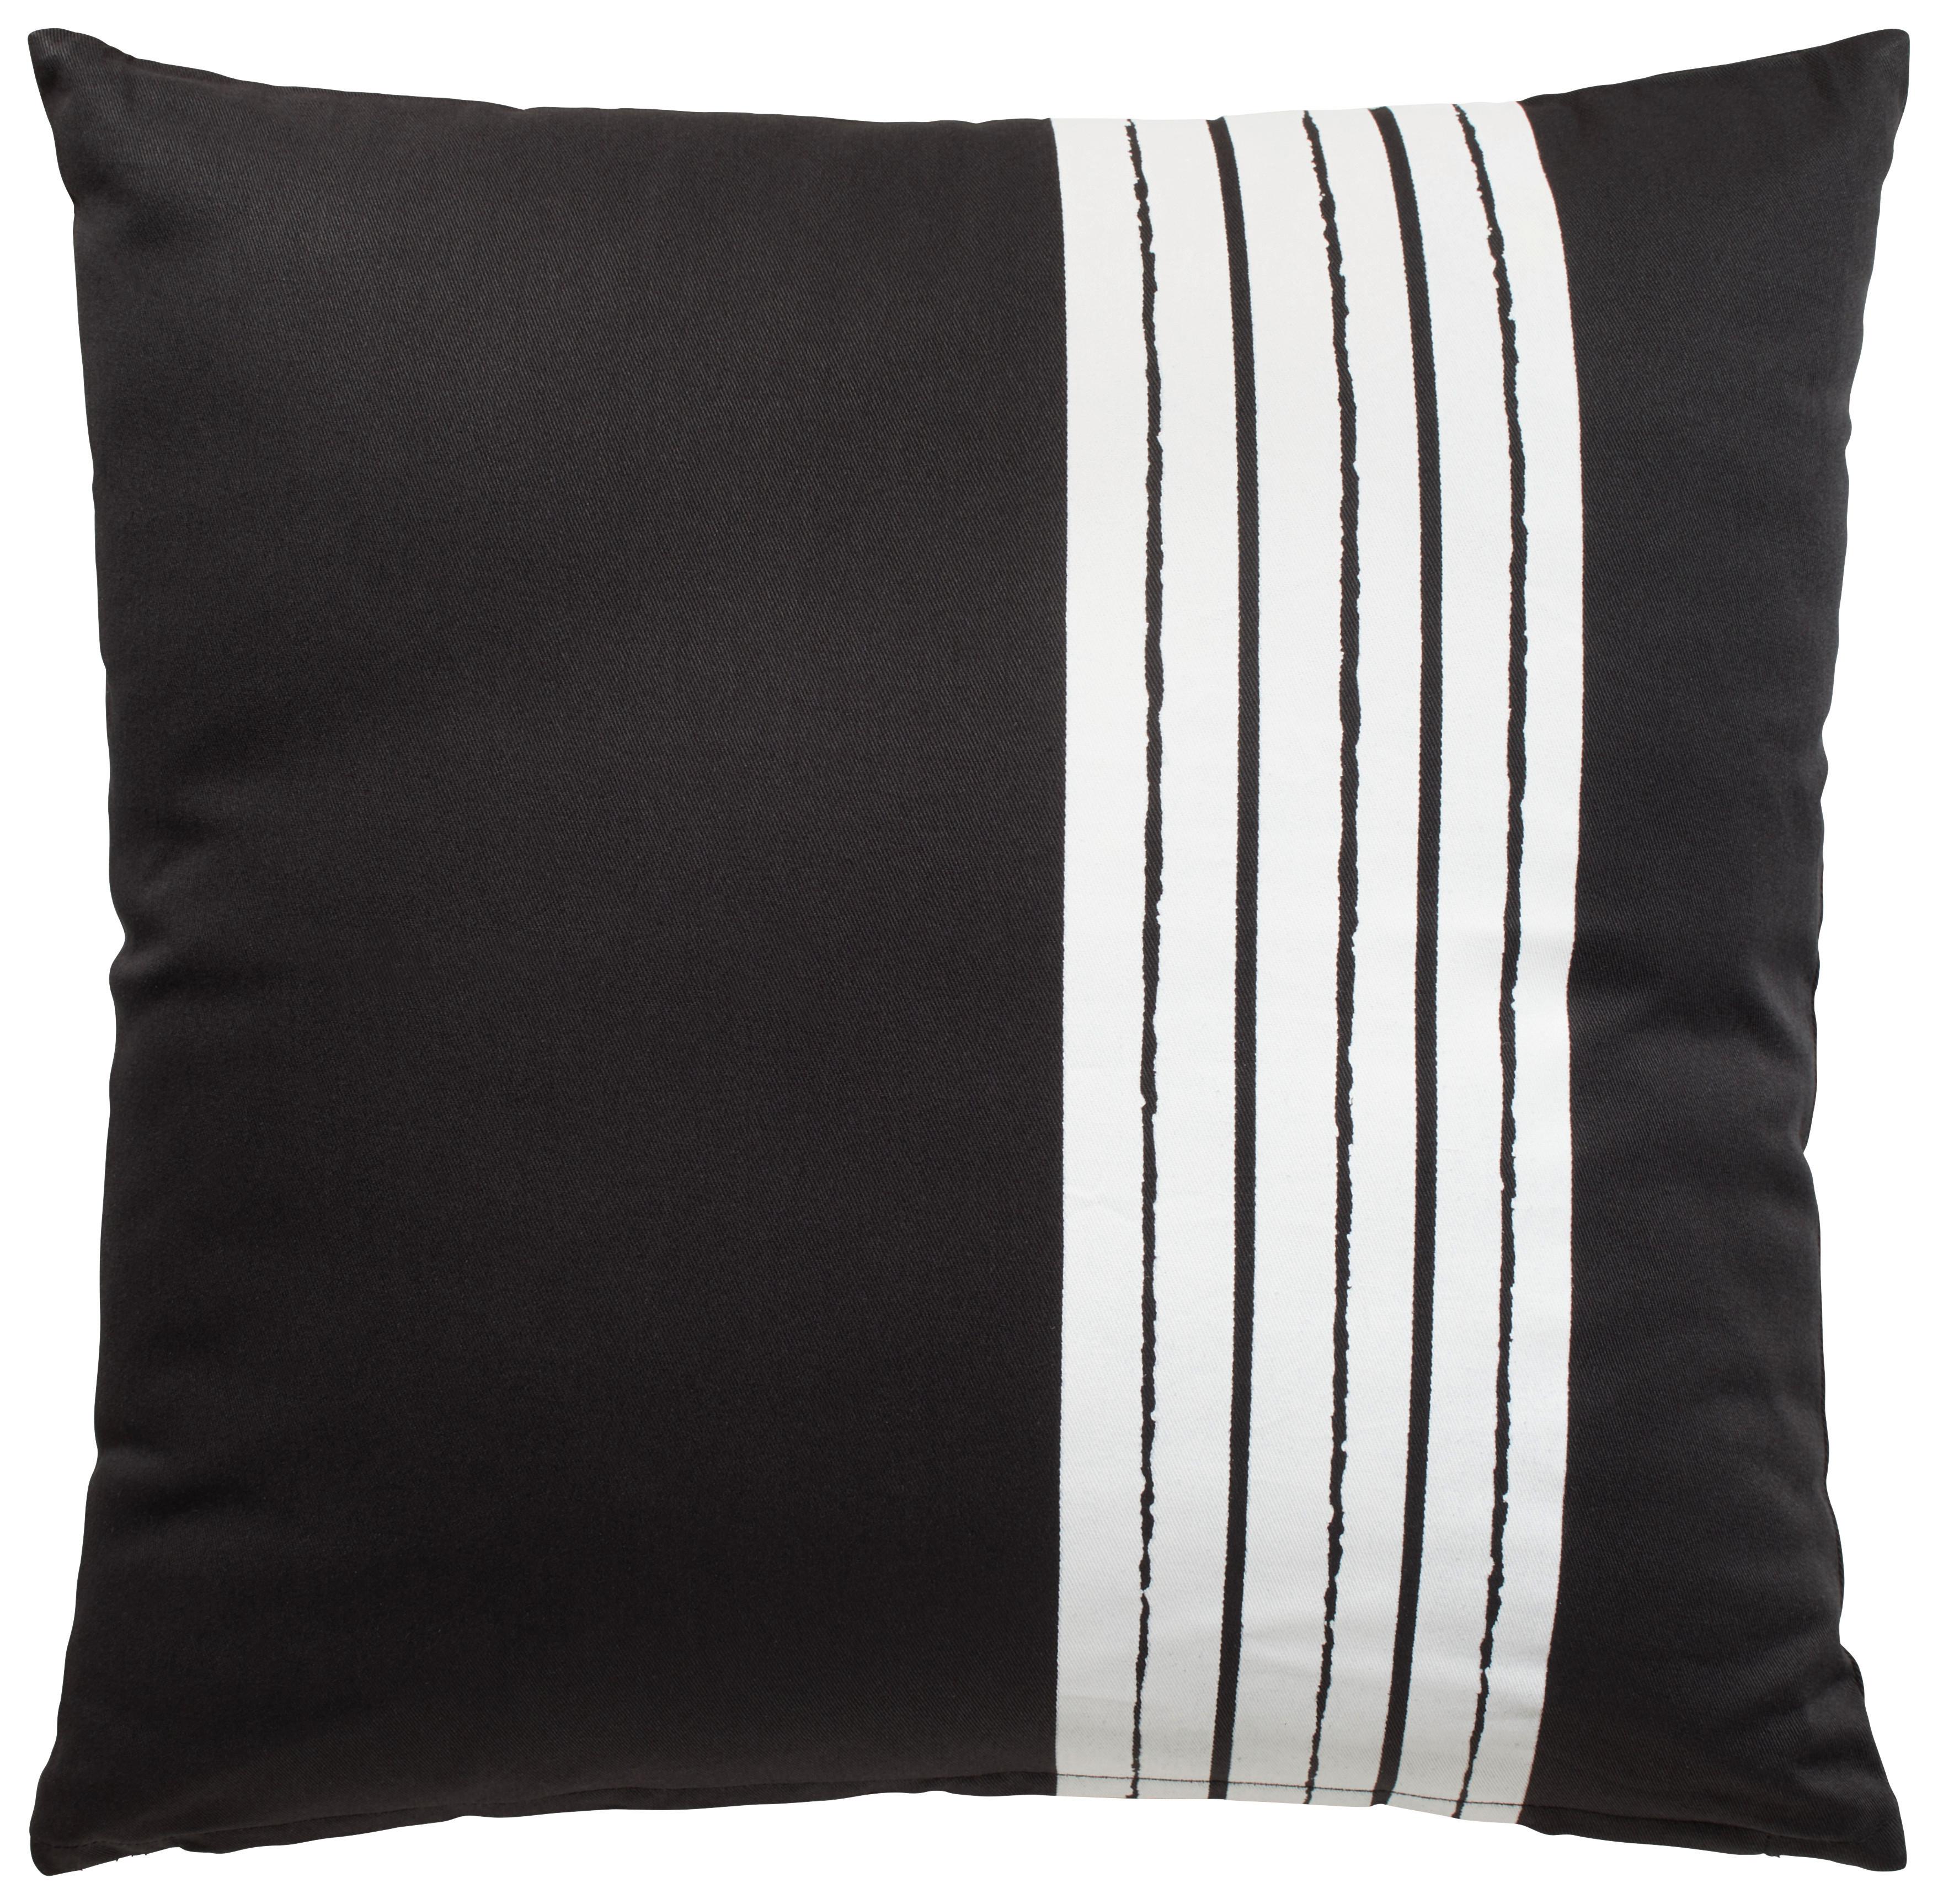 Zierkissen Stripe in Schwarz ca. 45x45cm - Schwarz, Modern, Textil (45/45cm) - Modern Living